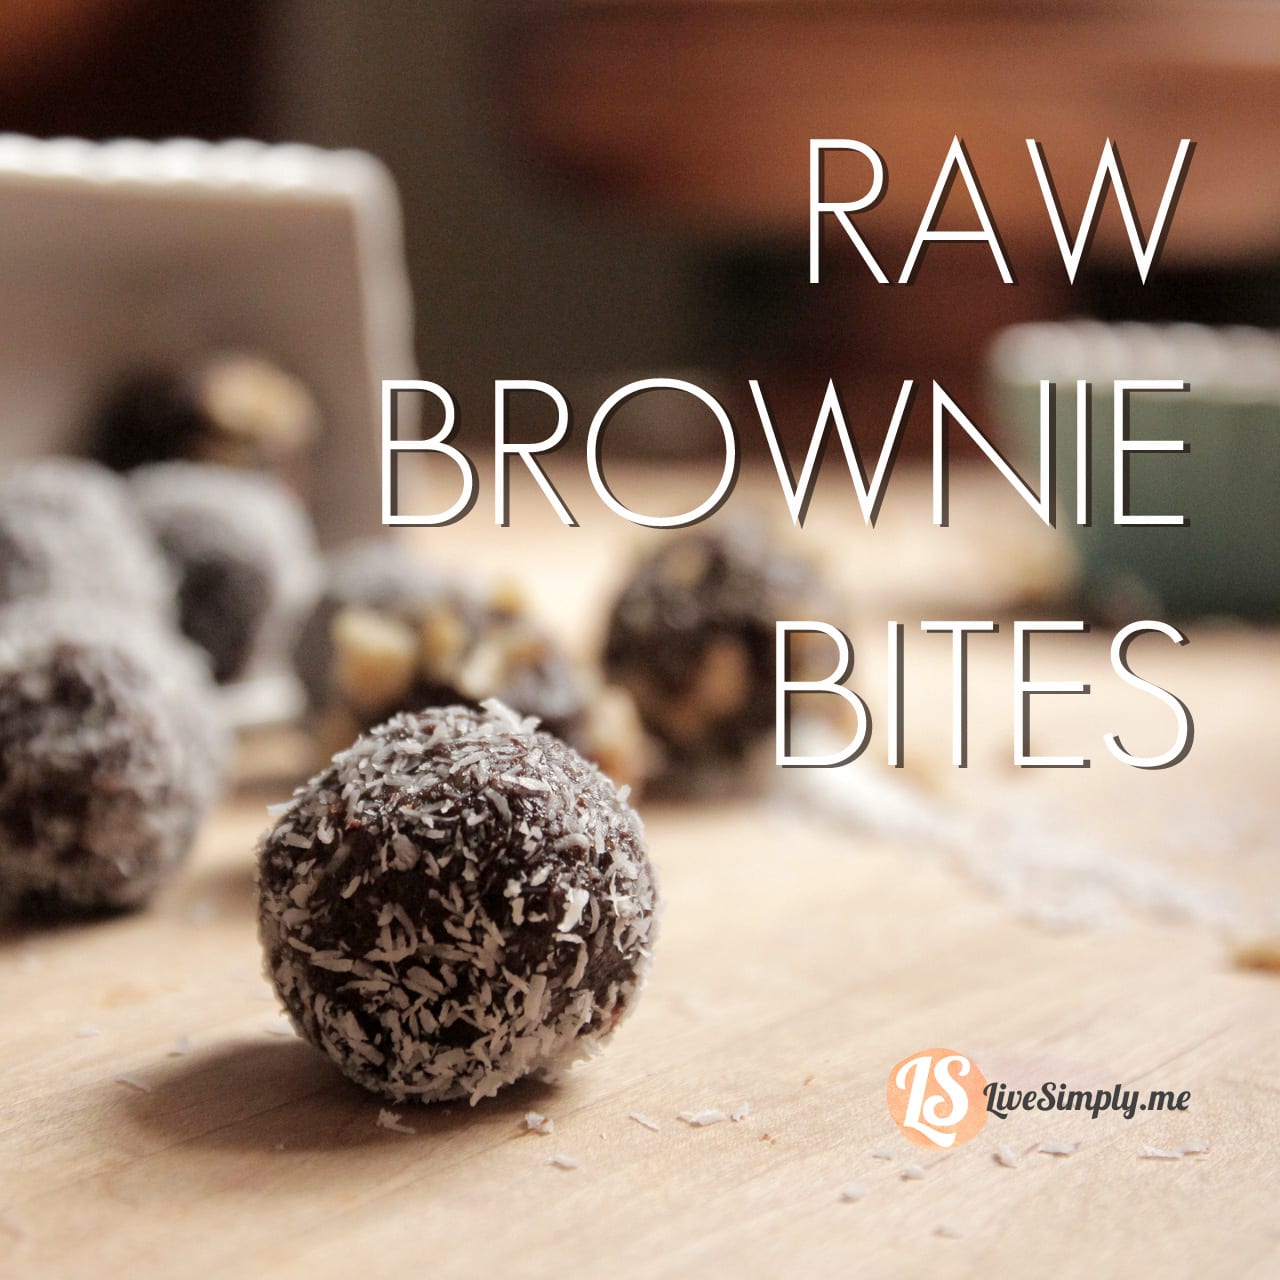 Raw Brownie Bites